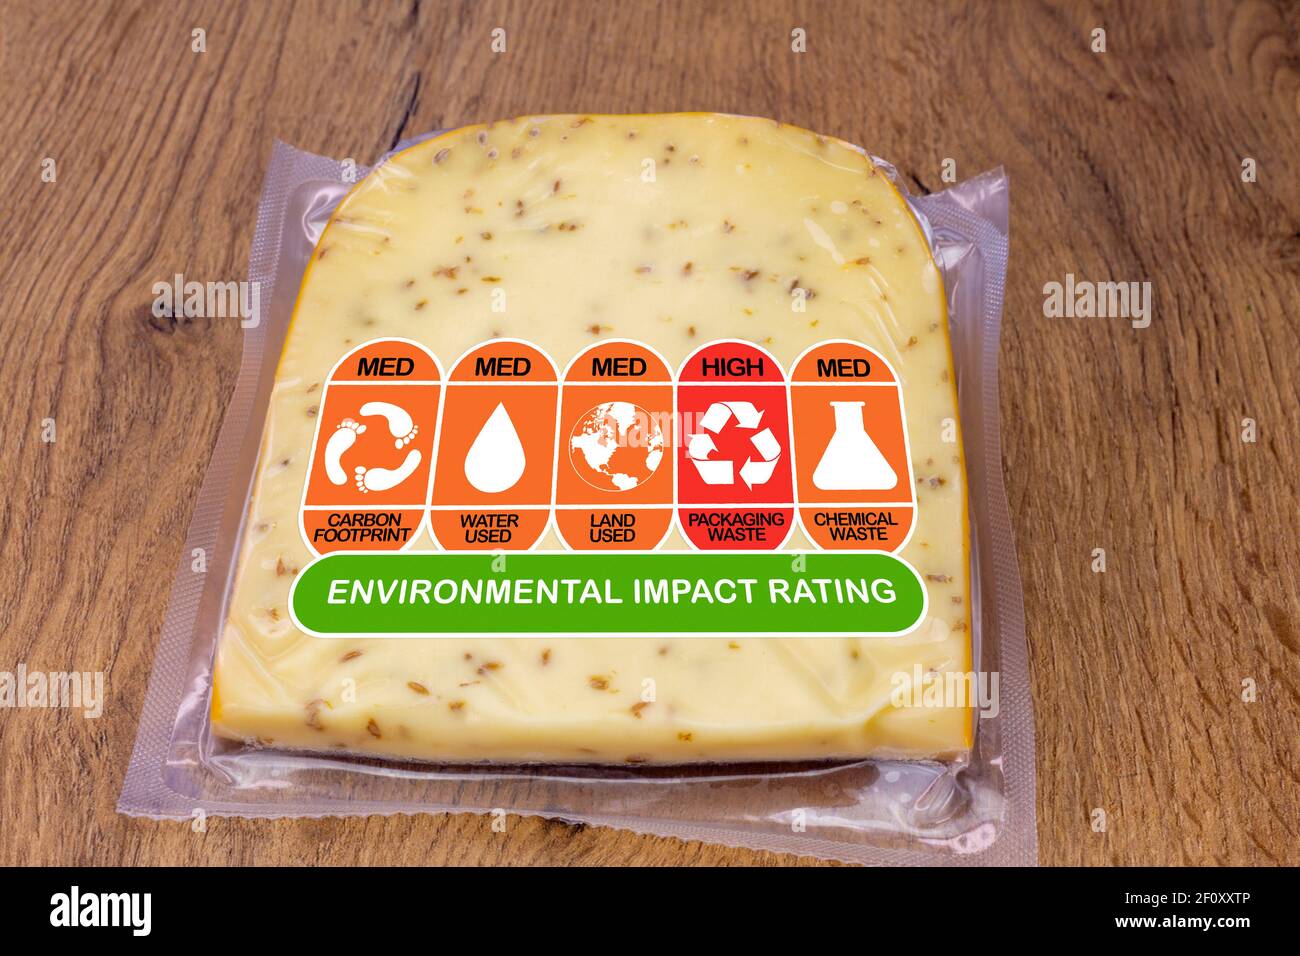 Valutazione dell'impatto ambientale su confezioni di formaggi con valori nominali alti, med e bassi per l'impronta di carbonio degli alimenti, l'uso di acqua, l'uso del terreno, i rifiuti di imballaggio e che Foto Stock